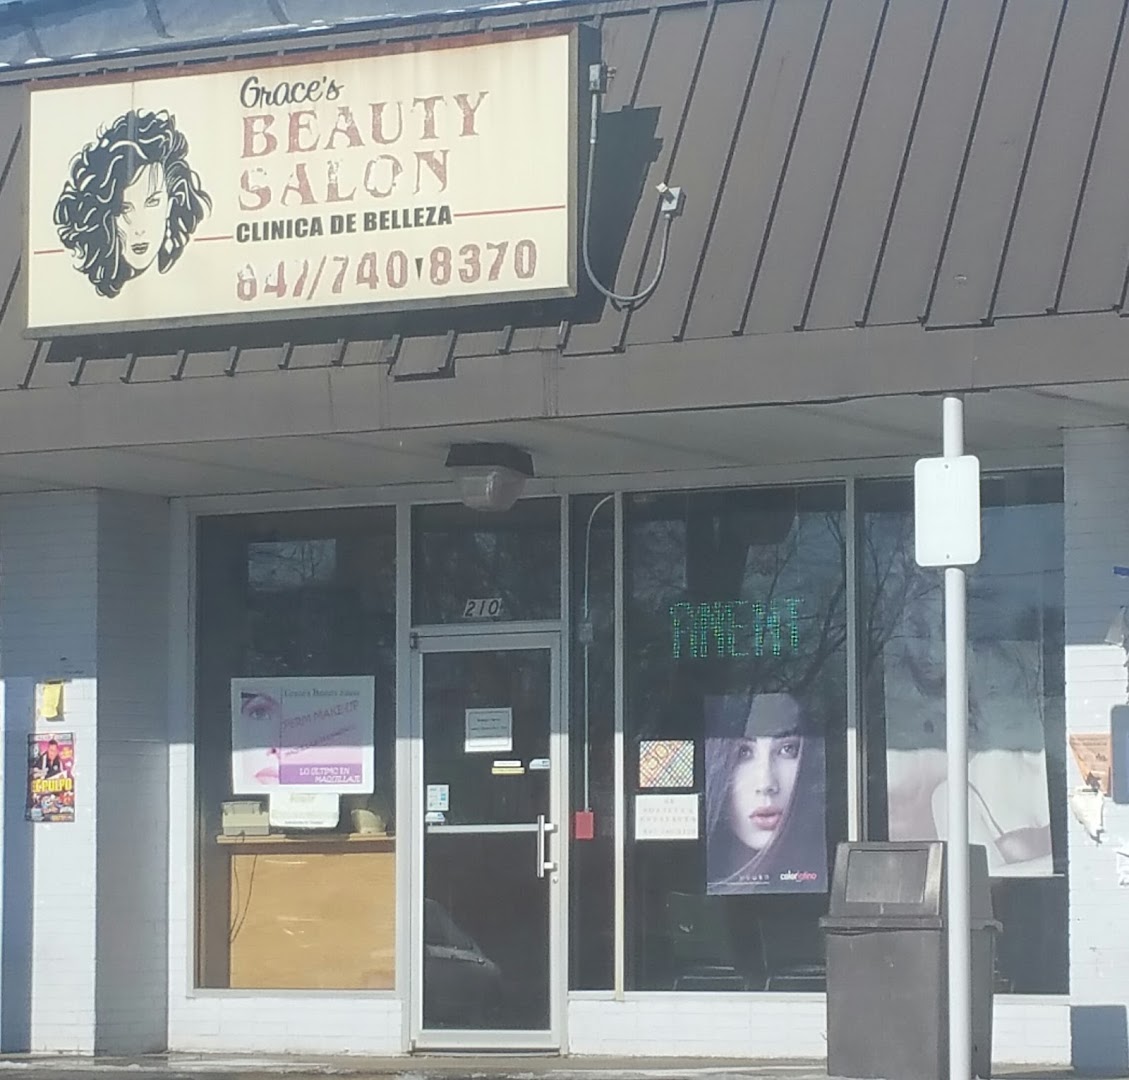 Gracie's Beauty Salon